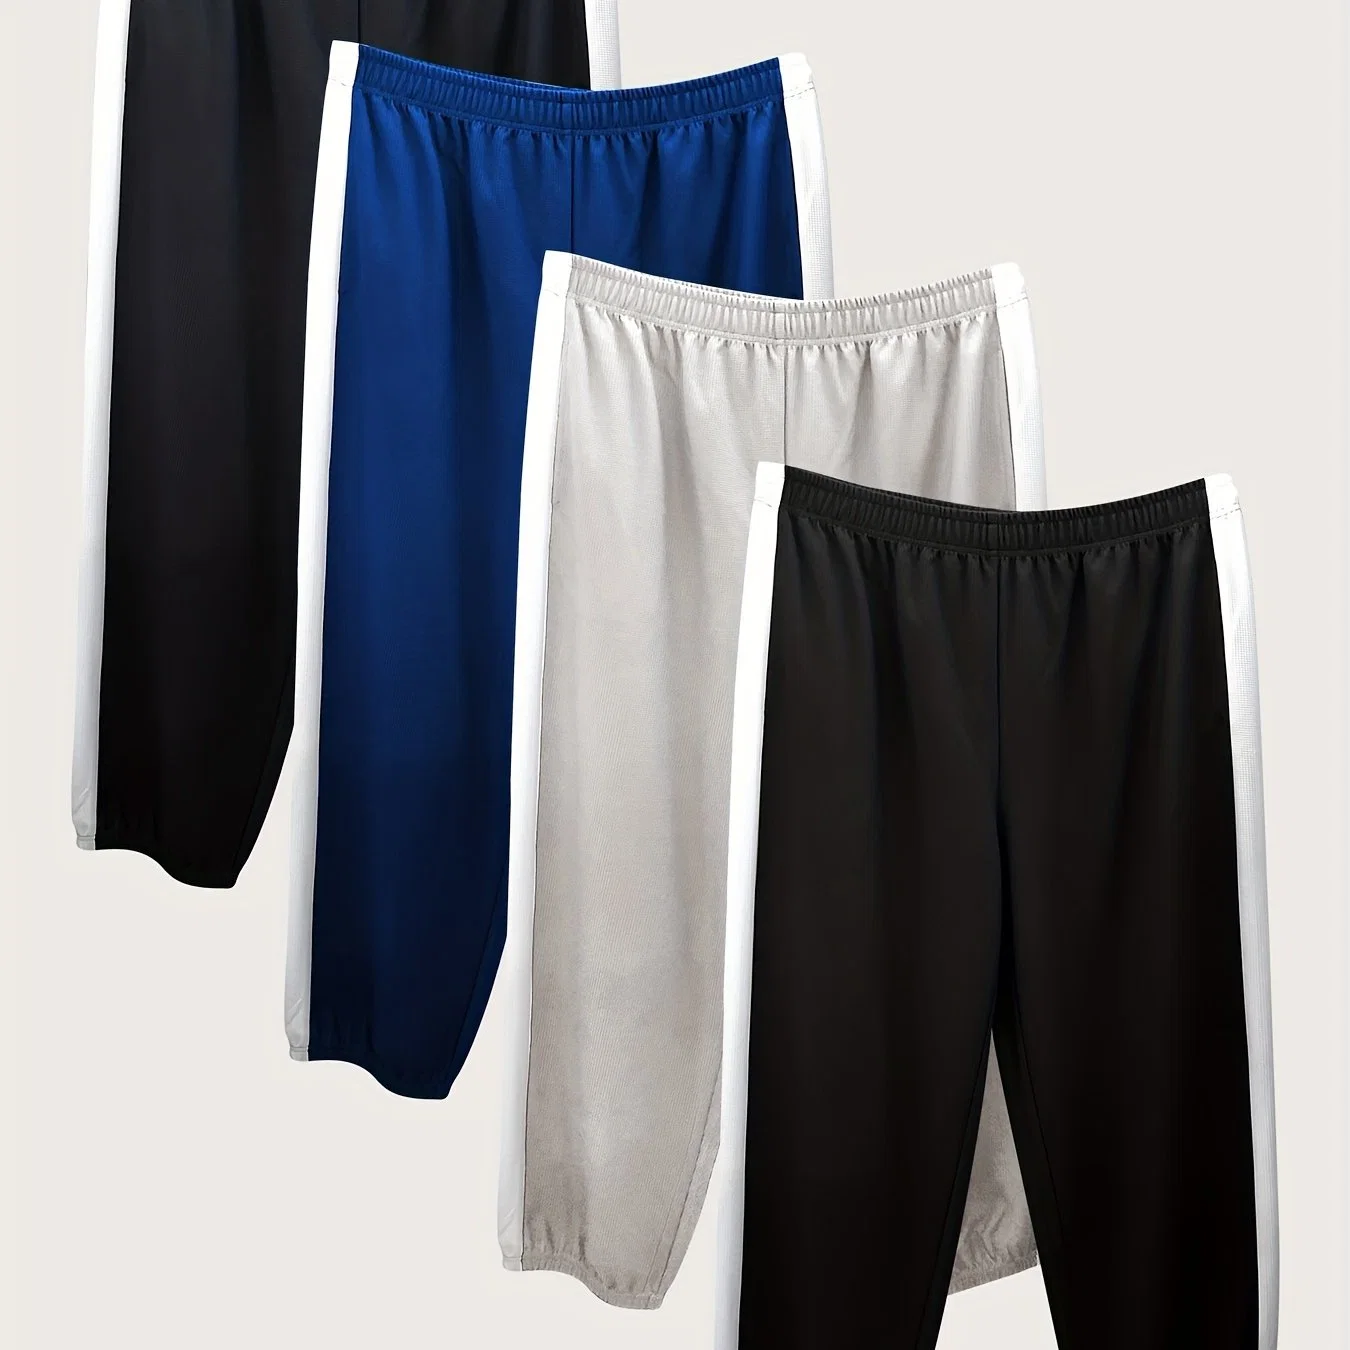 Pantalons de sport en molleton pour hommes de grande taille, 4 pièces, avec panneau latéral à motif de clause, pantalons de survêtement pour hommes de grande taille.